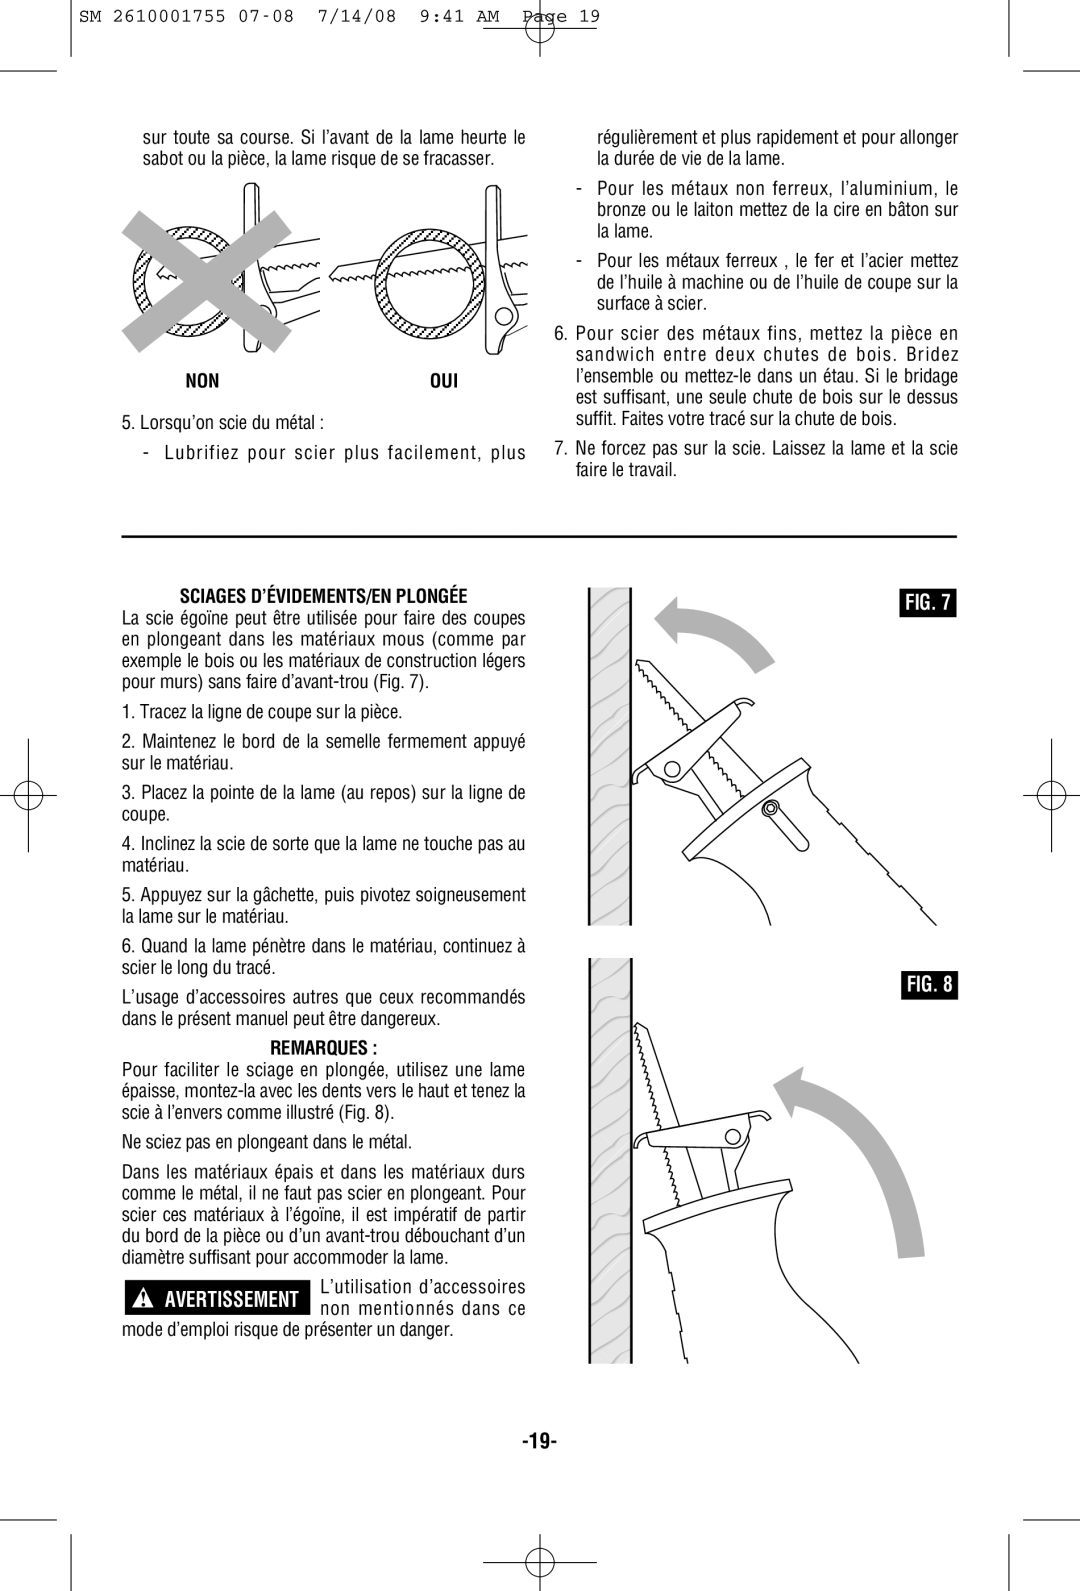 Skil 9215 manual Nonoui, Sciages D’Évidements/En Plongée, Remarques 